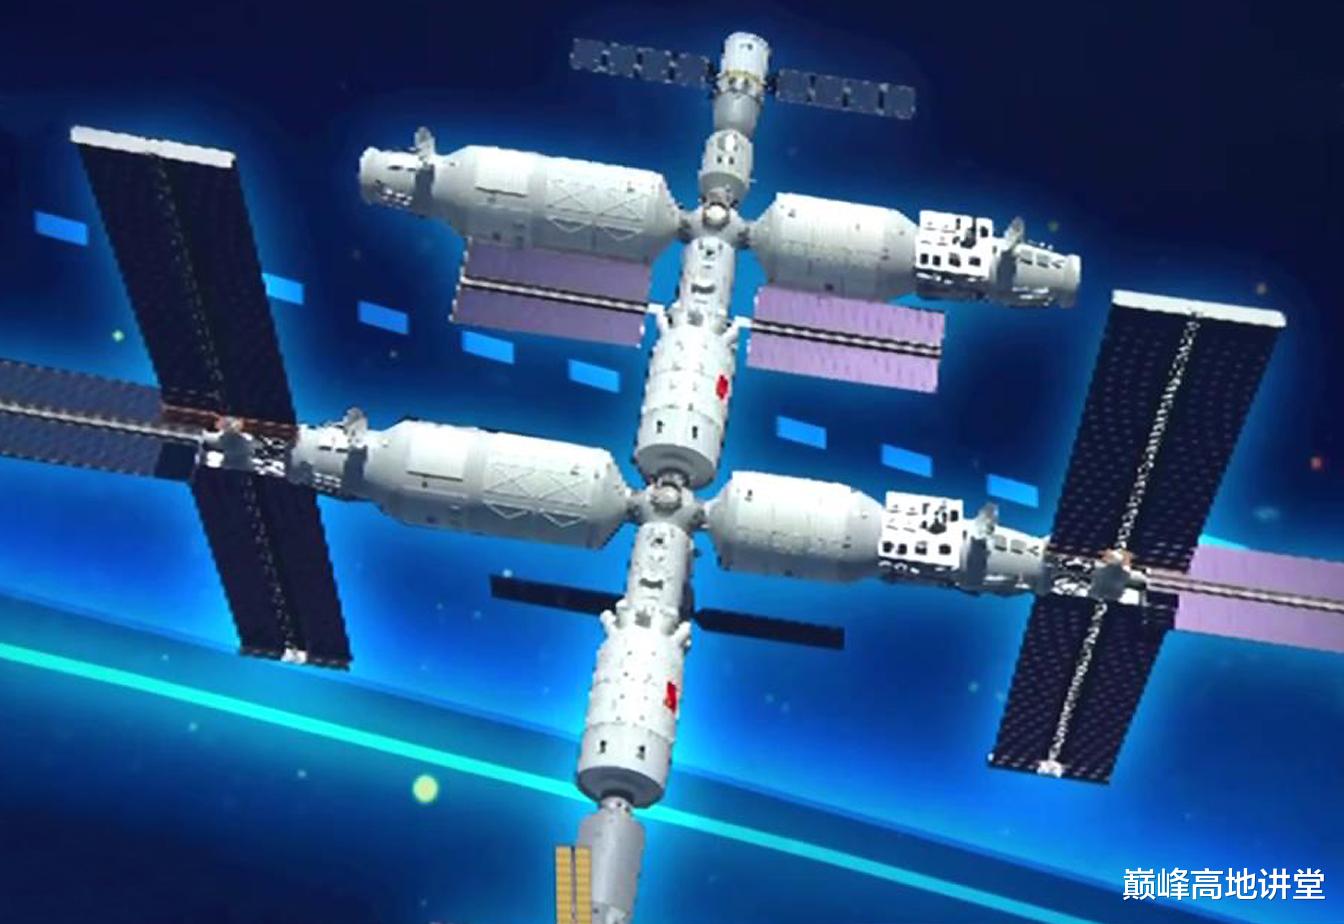 天宫空间站 天宫空间站核心舱产品有7台，强大的综合国力是载人航天中流砥柱